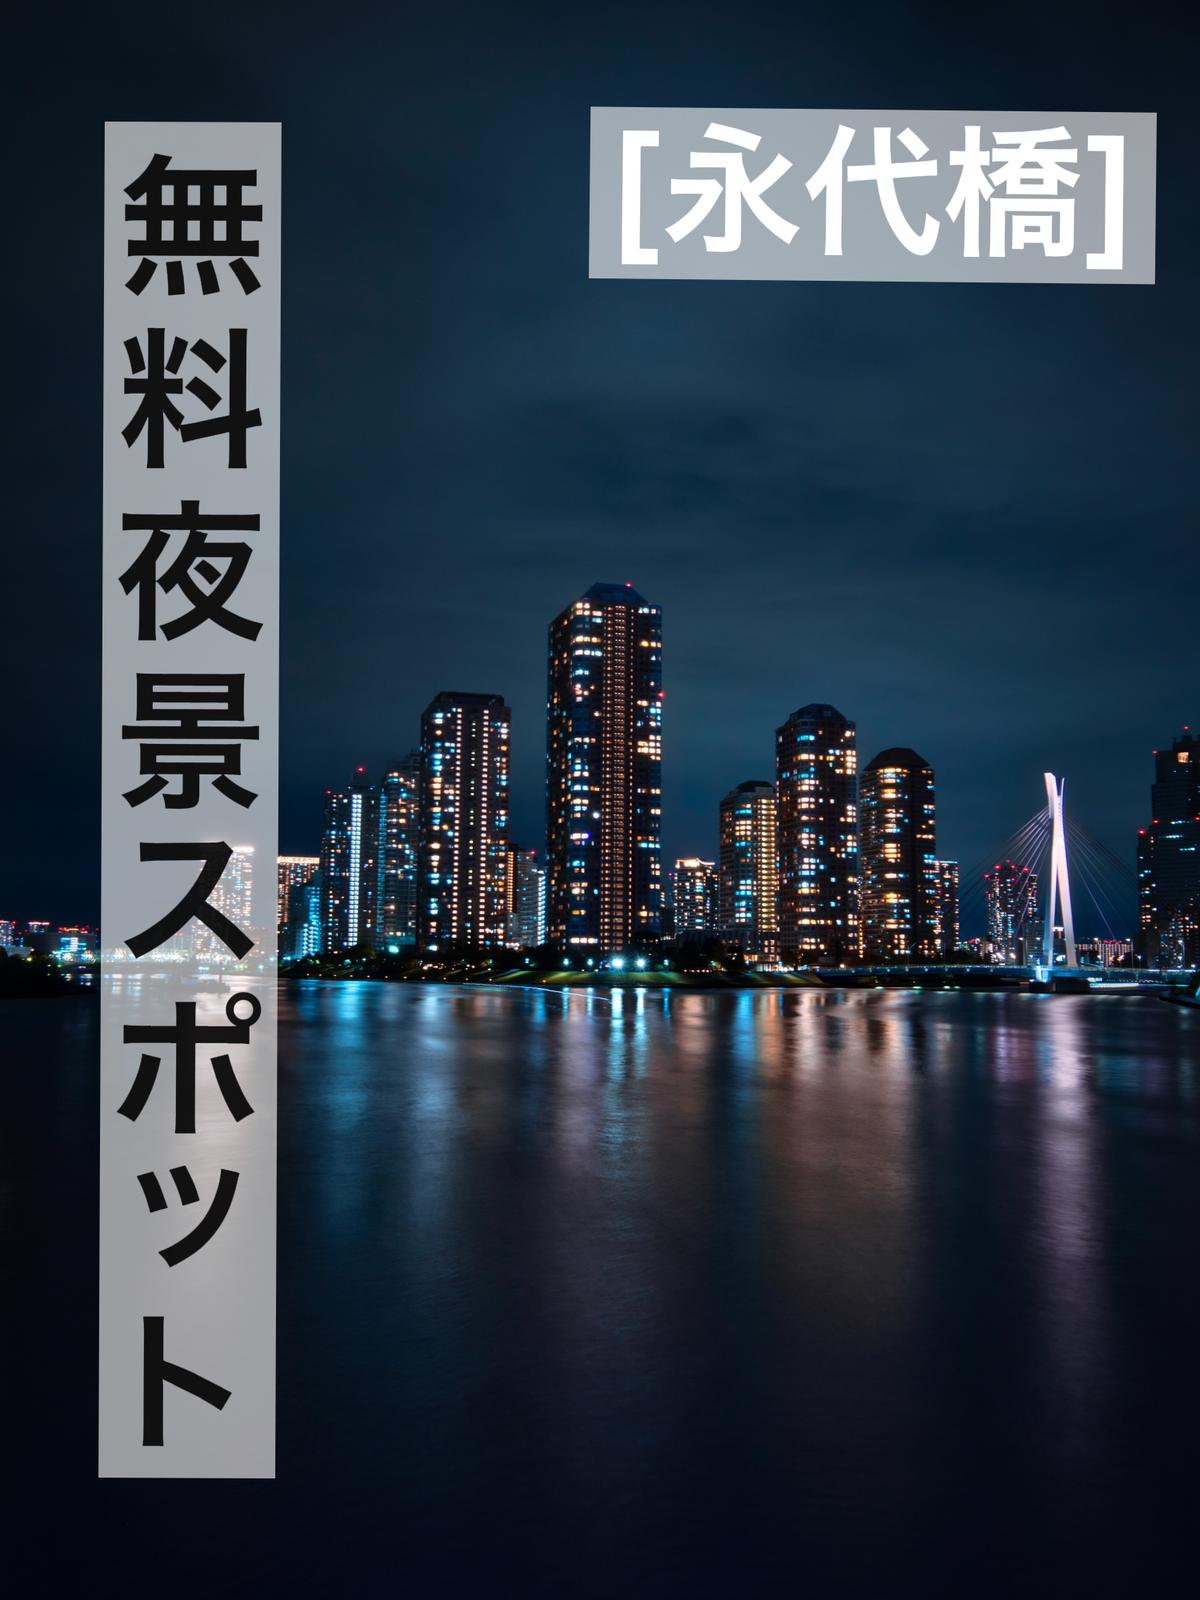 東京 無料夜景スポット Minat Akaが投稿したフォトブック Lemon8